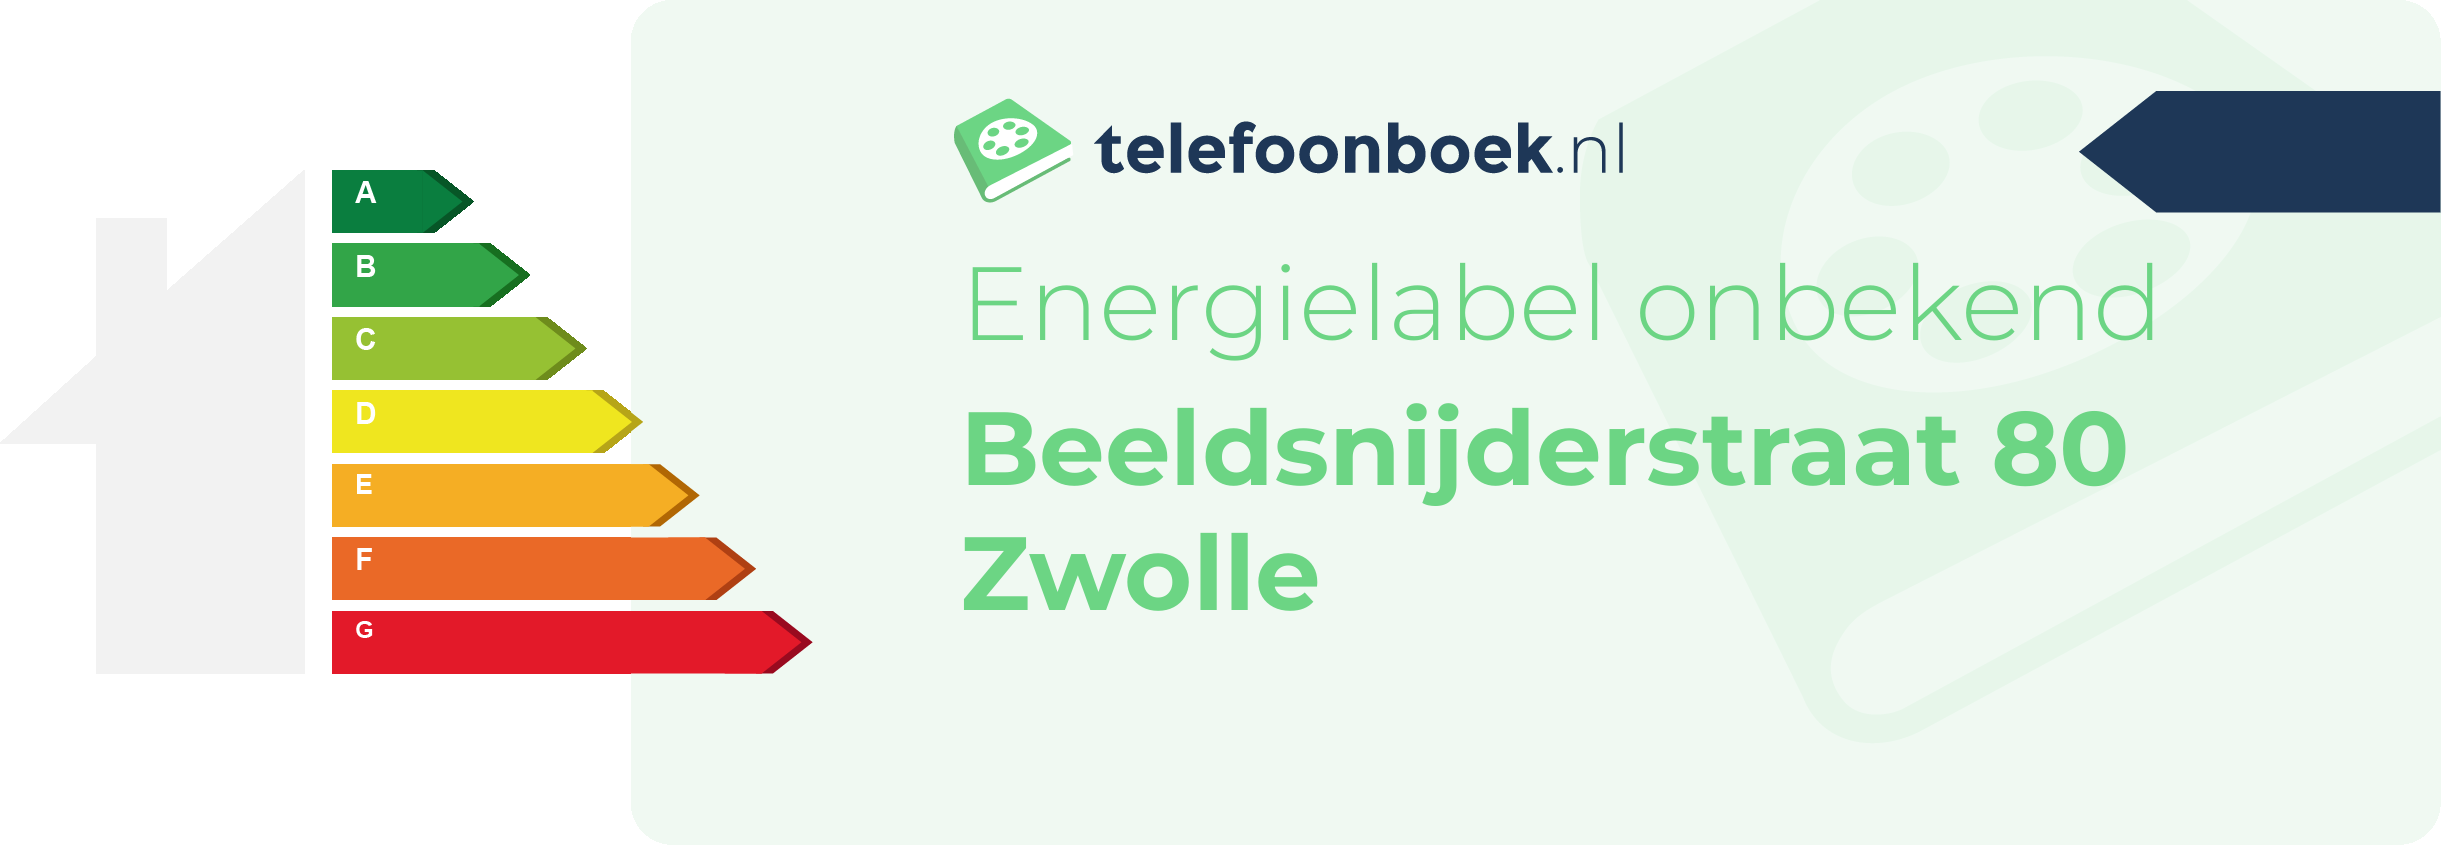 Energielabel Beeldsnijderstraat 80 Zwolle